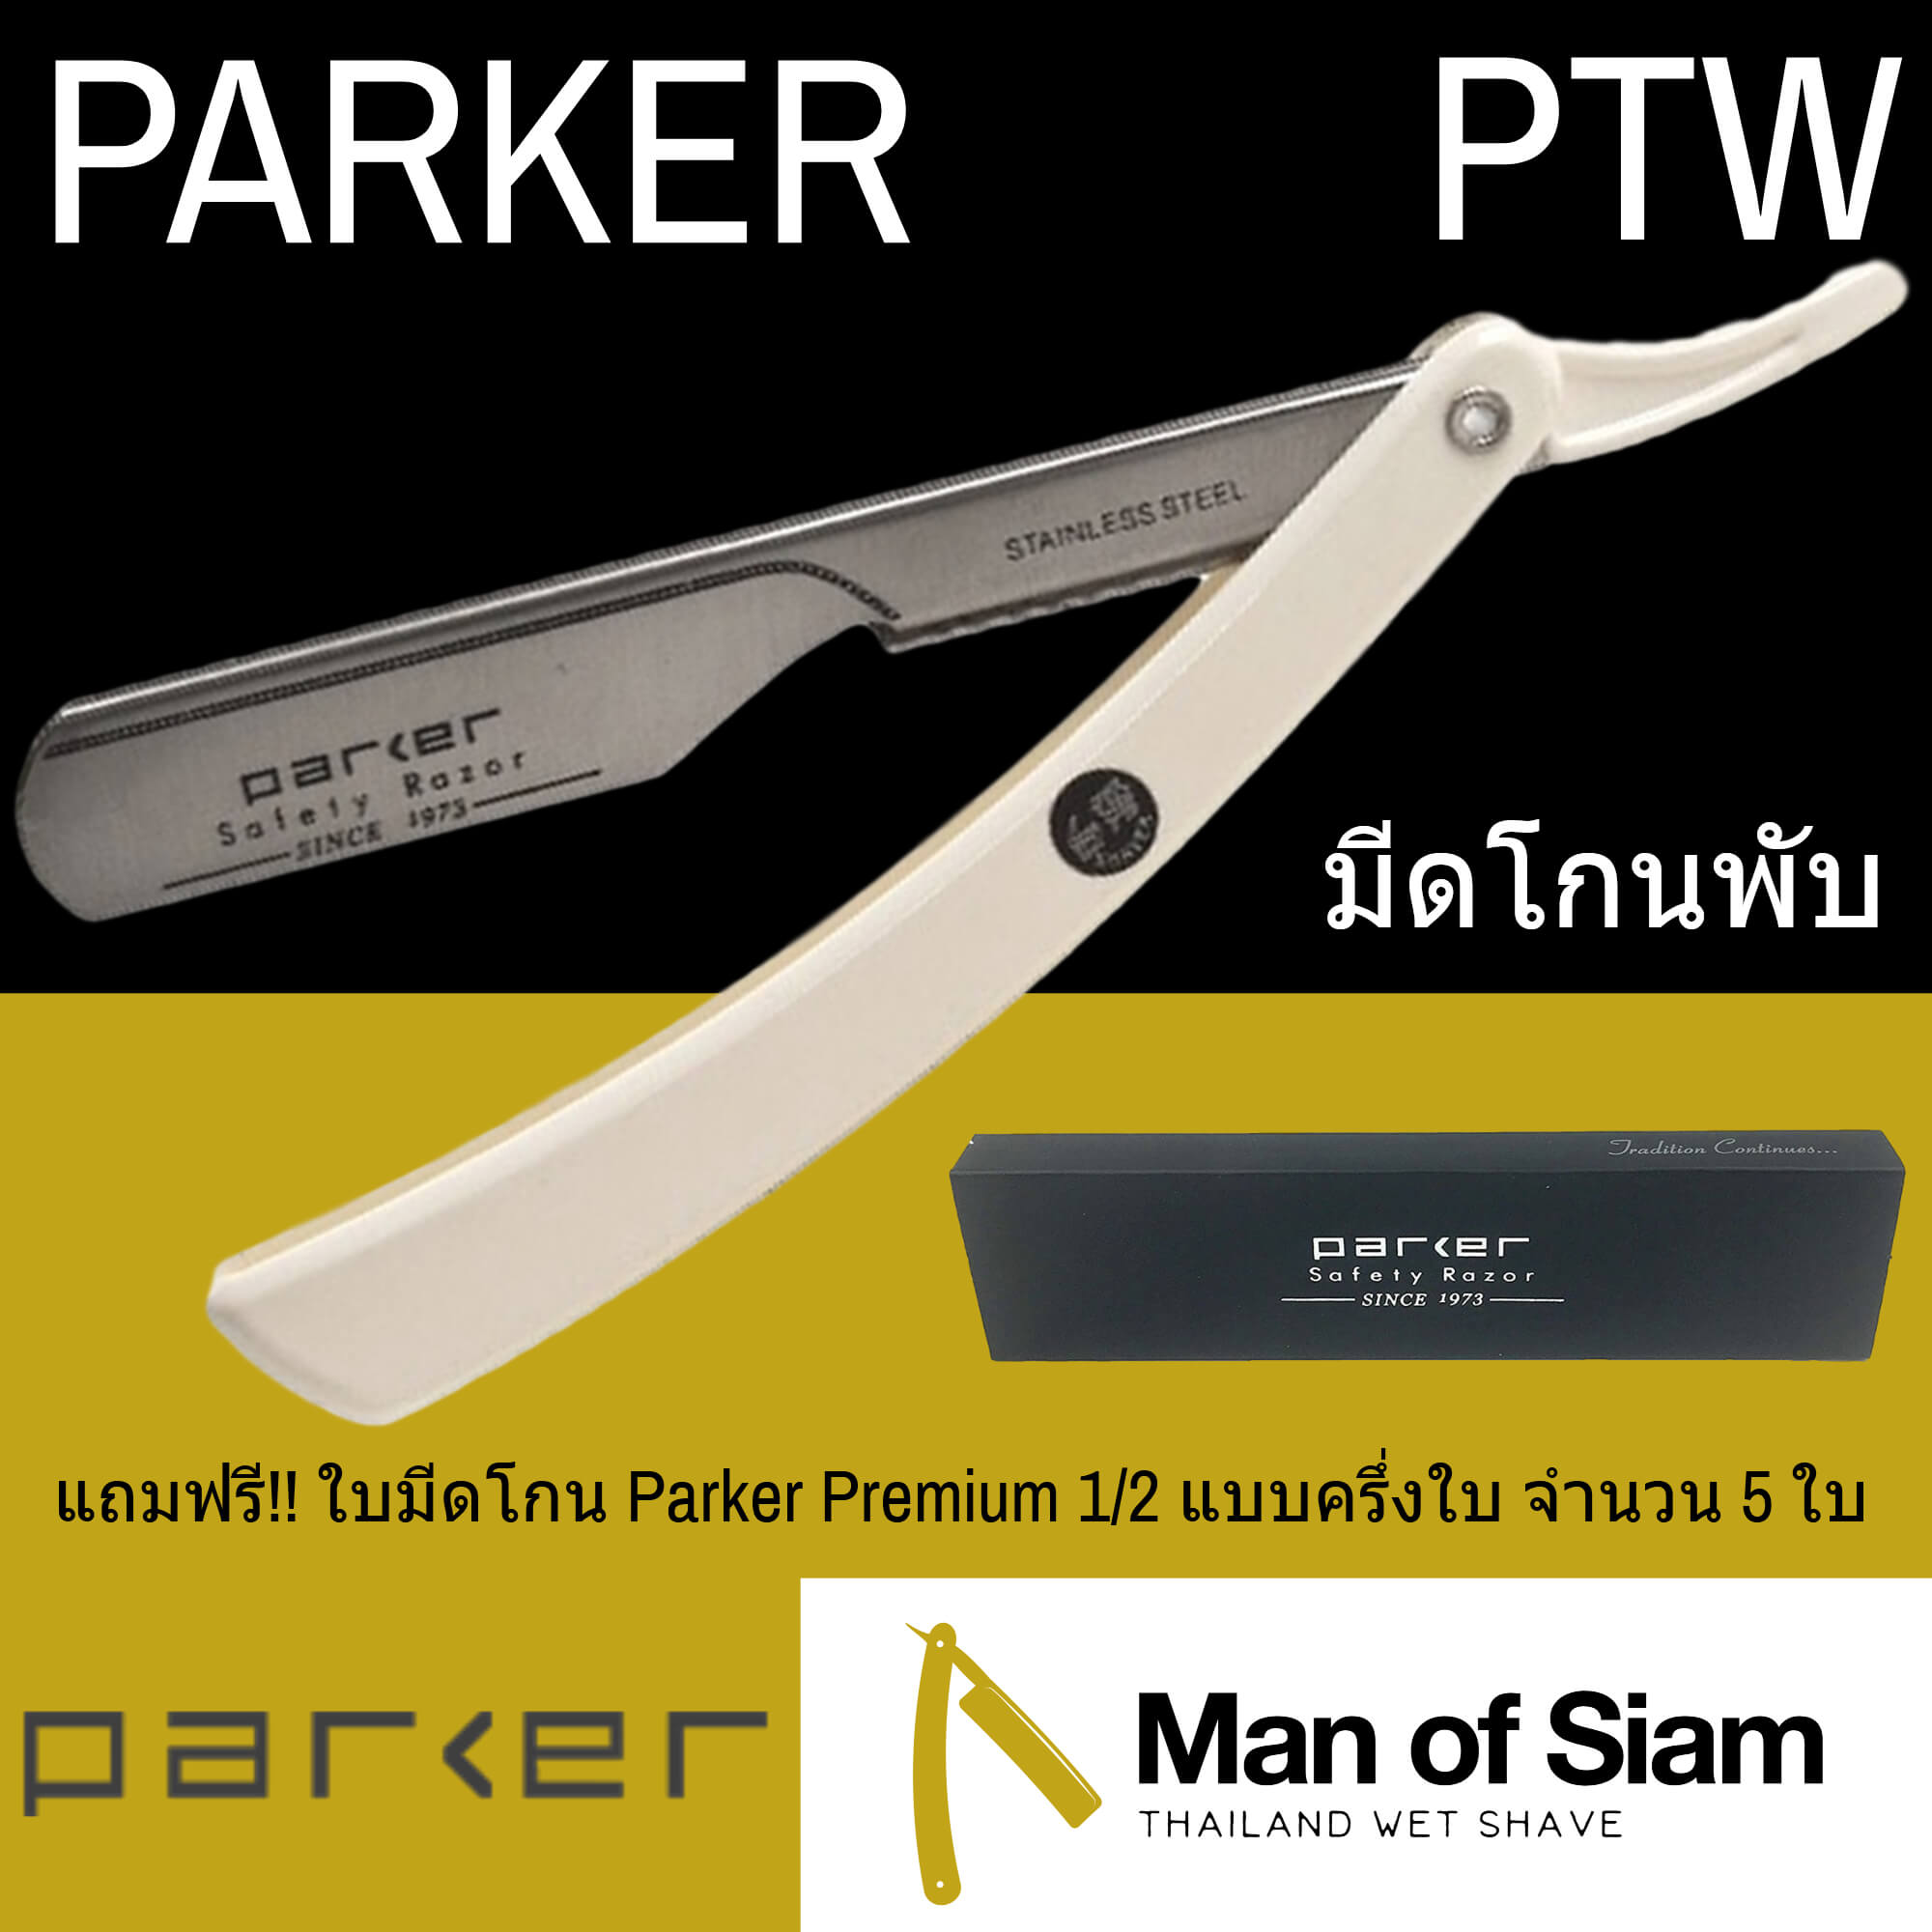 มีดโกนพับ Parker รุ่น PTW ด้ามมีดโกนเปลี่ยนใบมีด